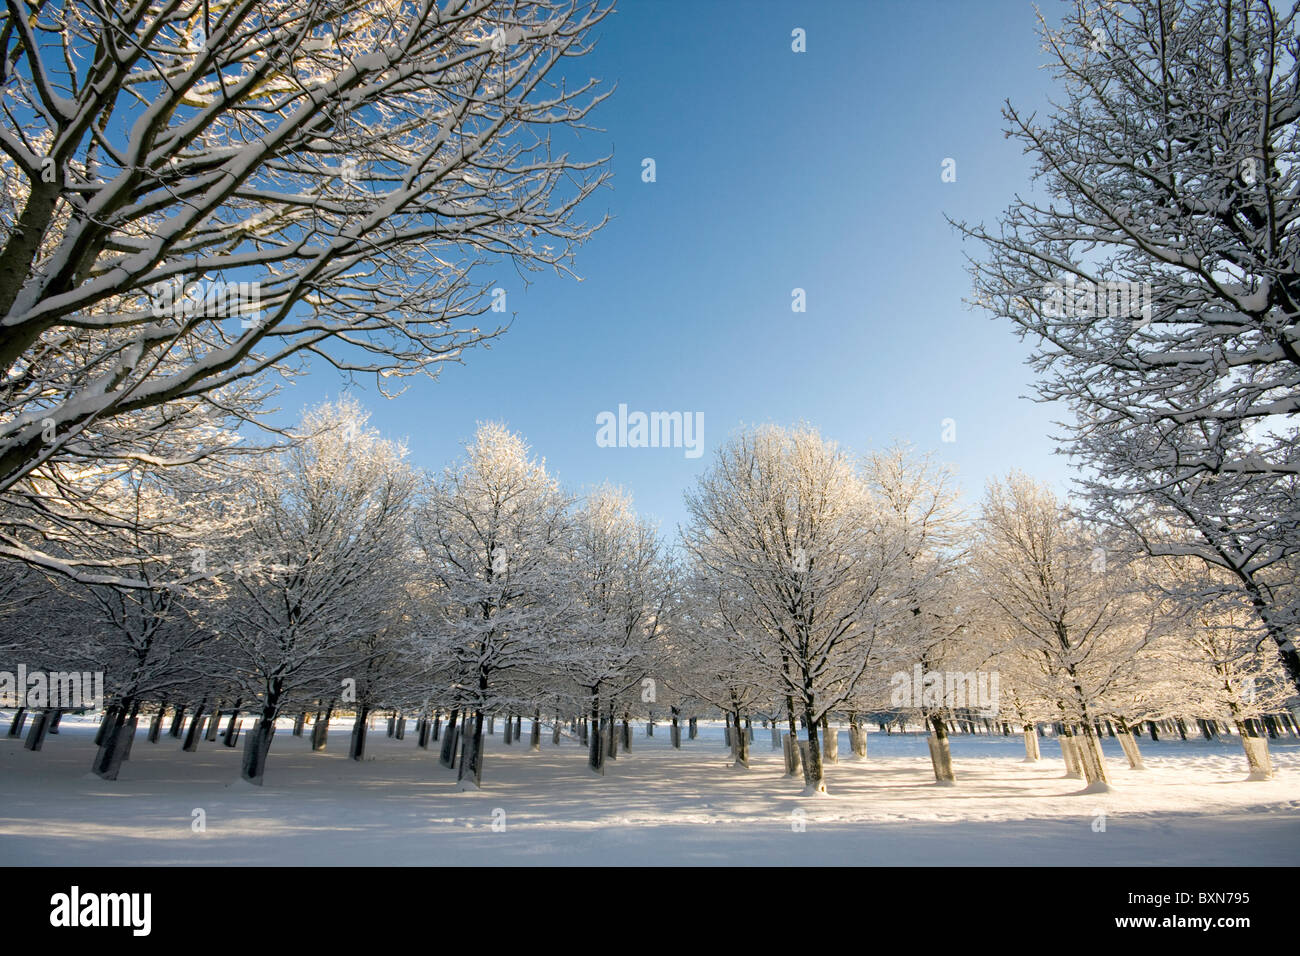 Vista de hileras de árboles cubiertos de nieve Foto de stock